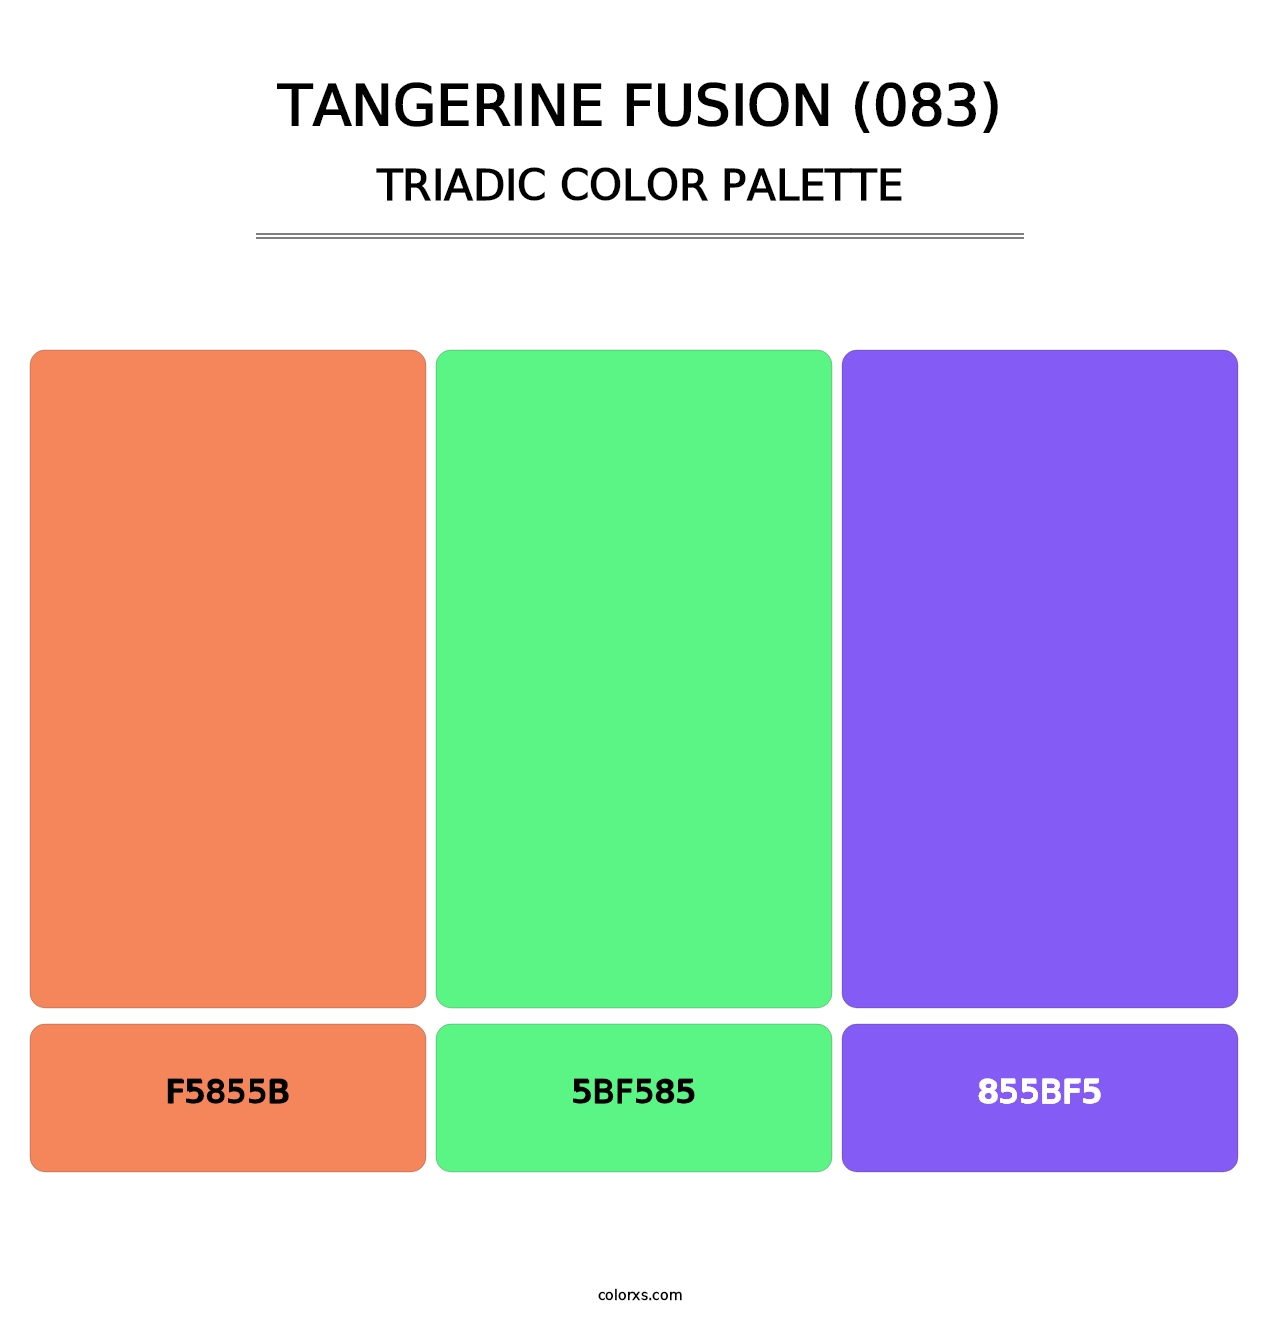 Tangerine Fusion (083) - Triadic Color Palette